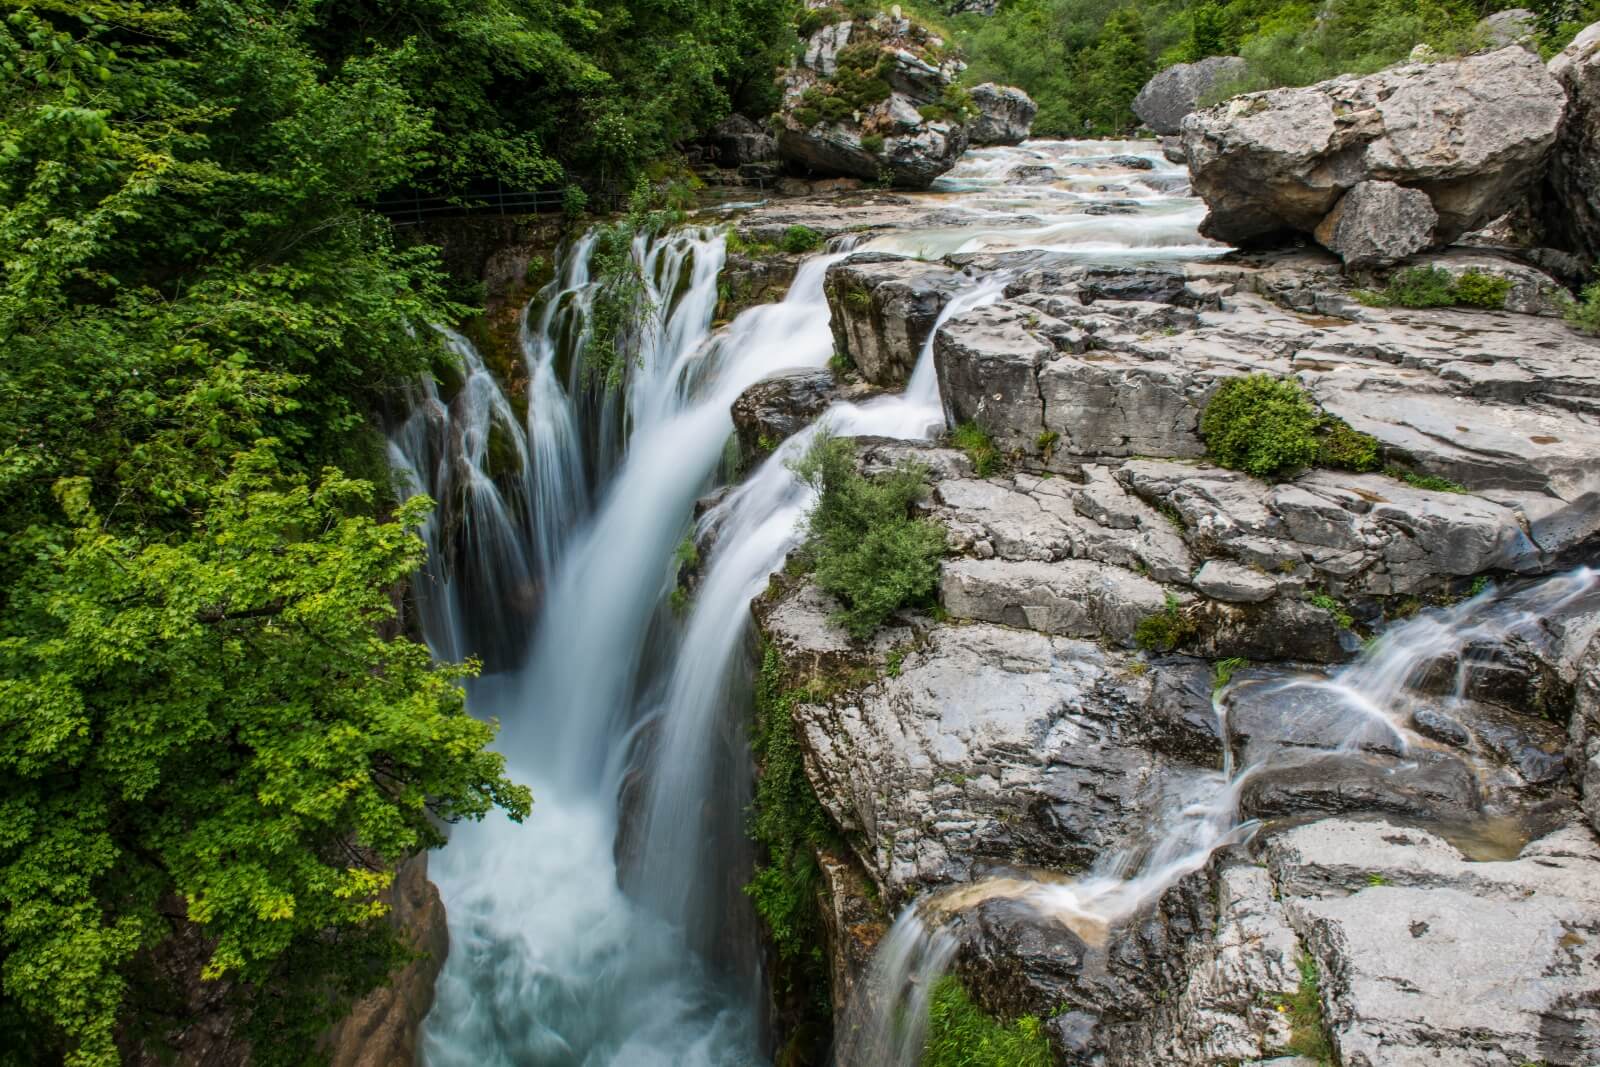 Image of Cascada de Aso (Aso River Waterfall) by Wayne & Lyn Liebelt